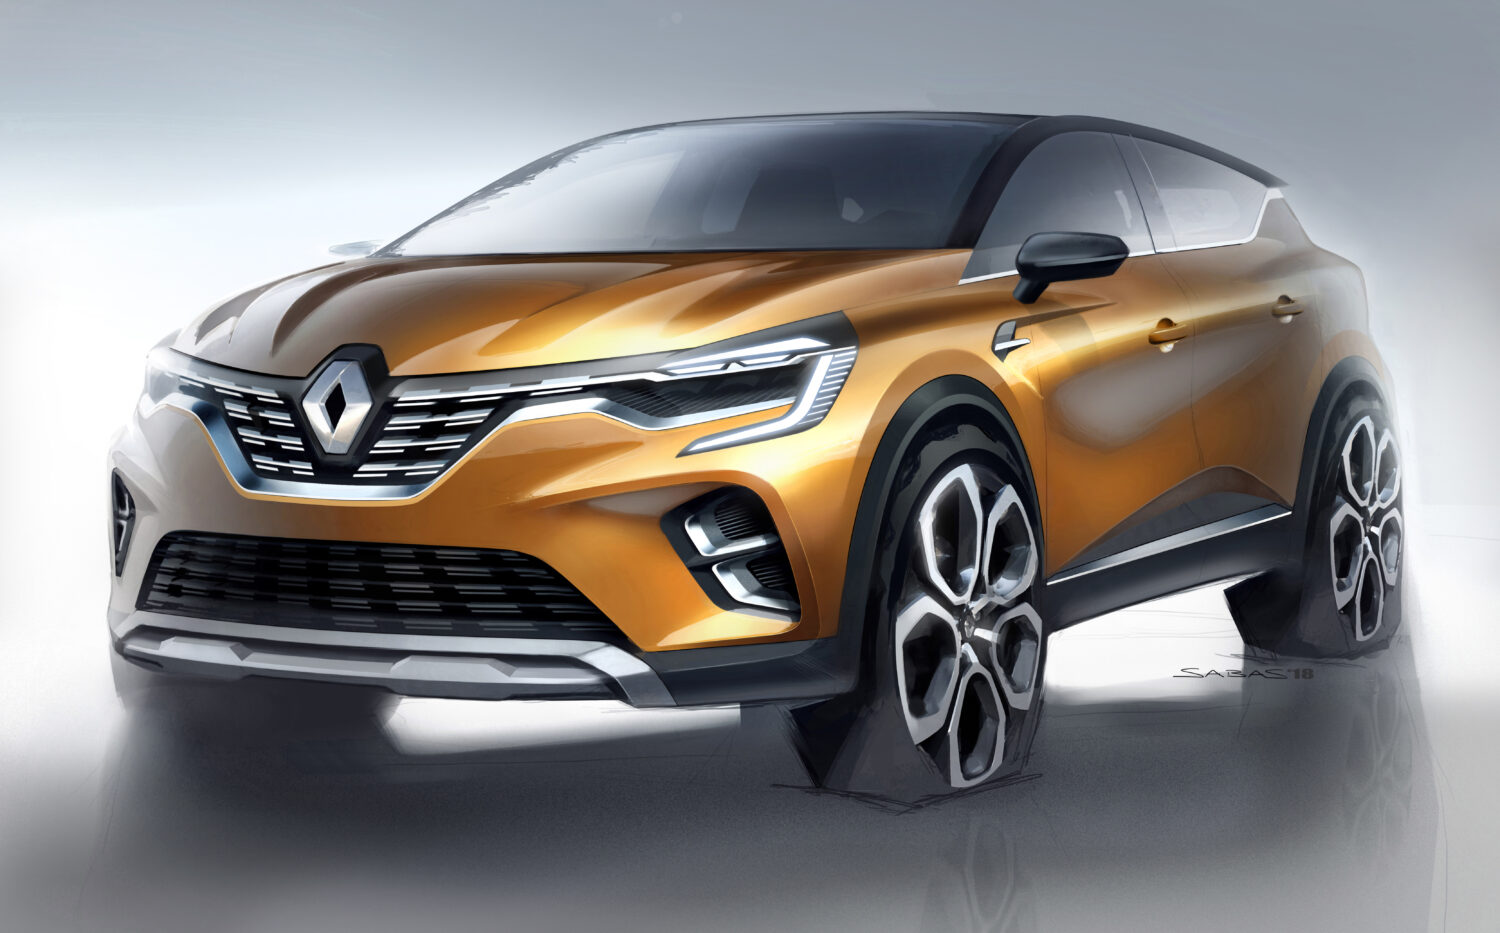 2019 - Nouveau Renault CAPTUR.jpg